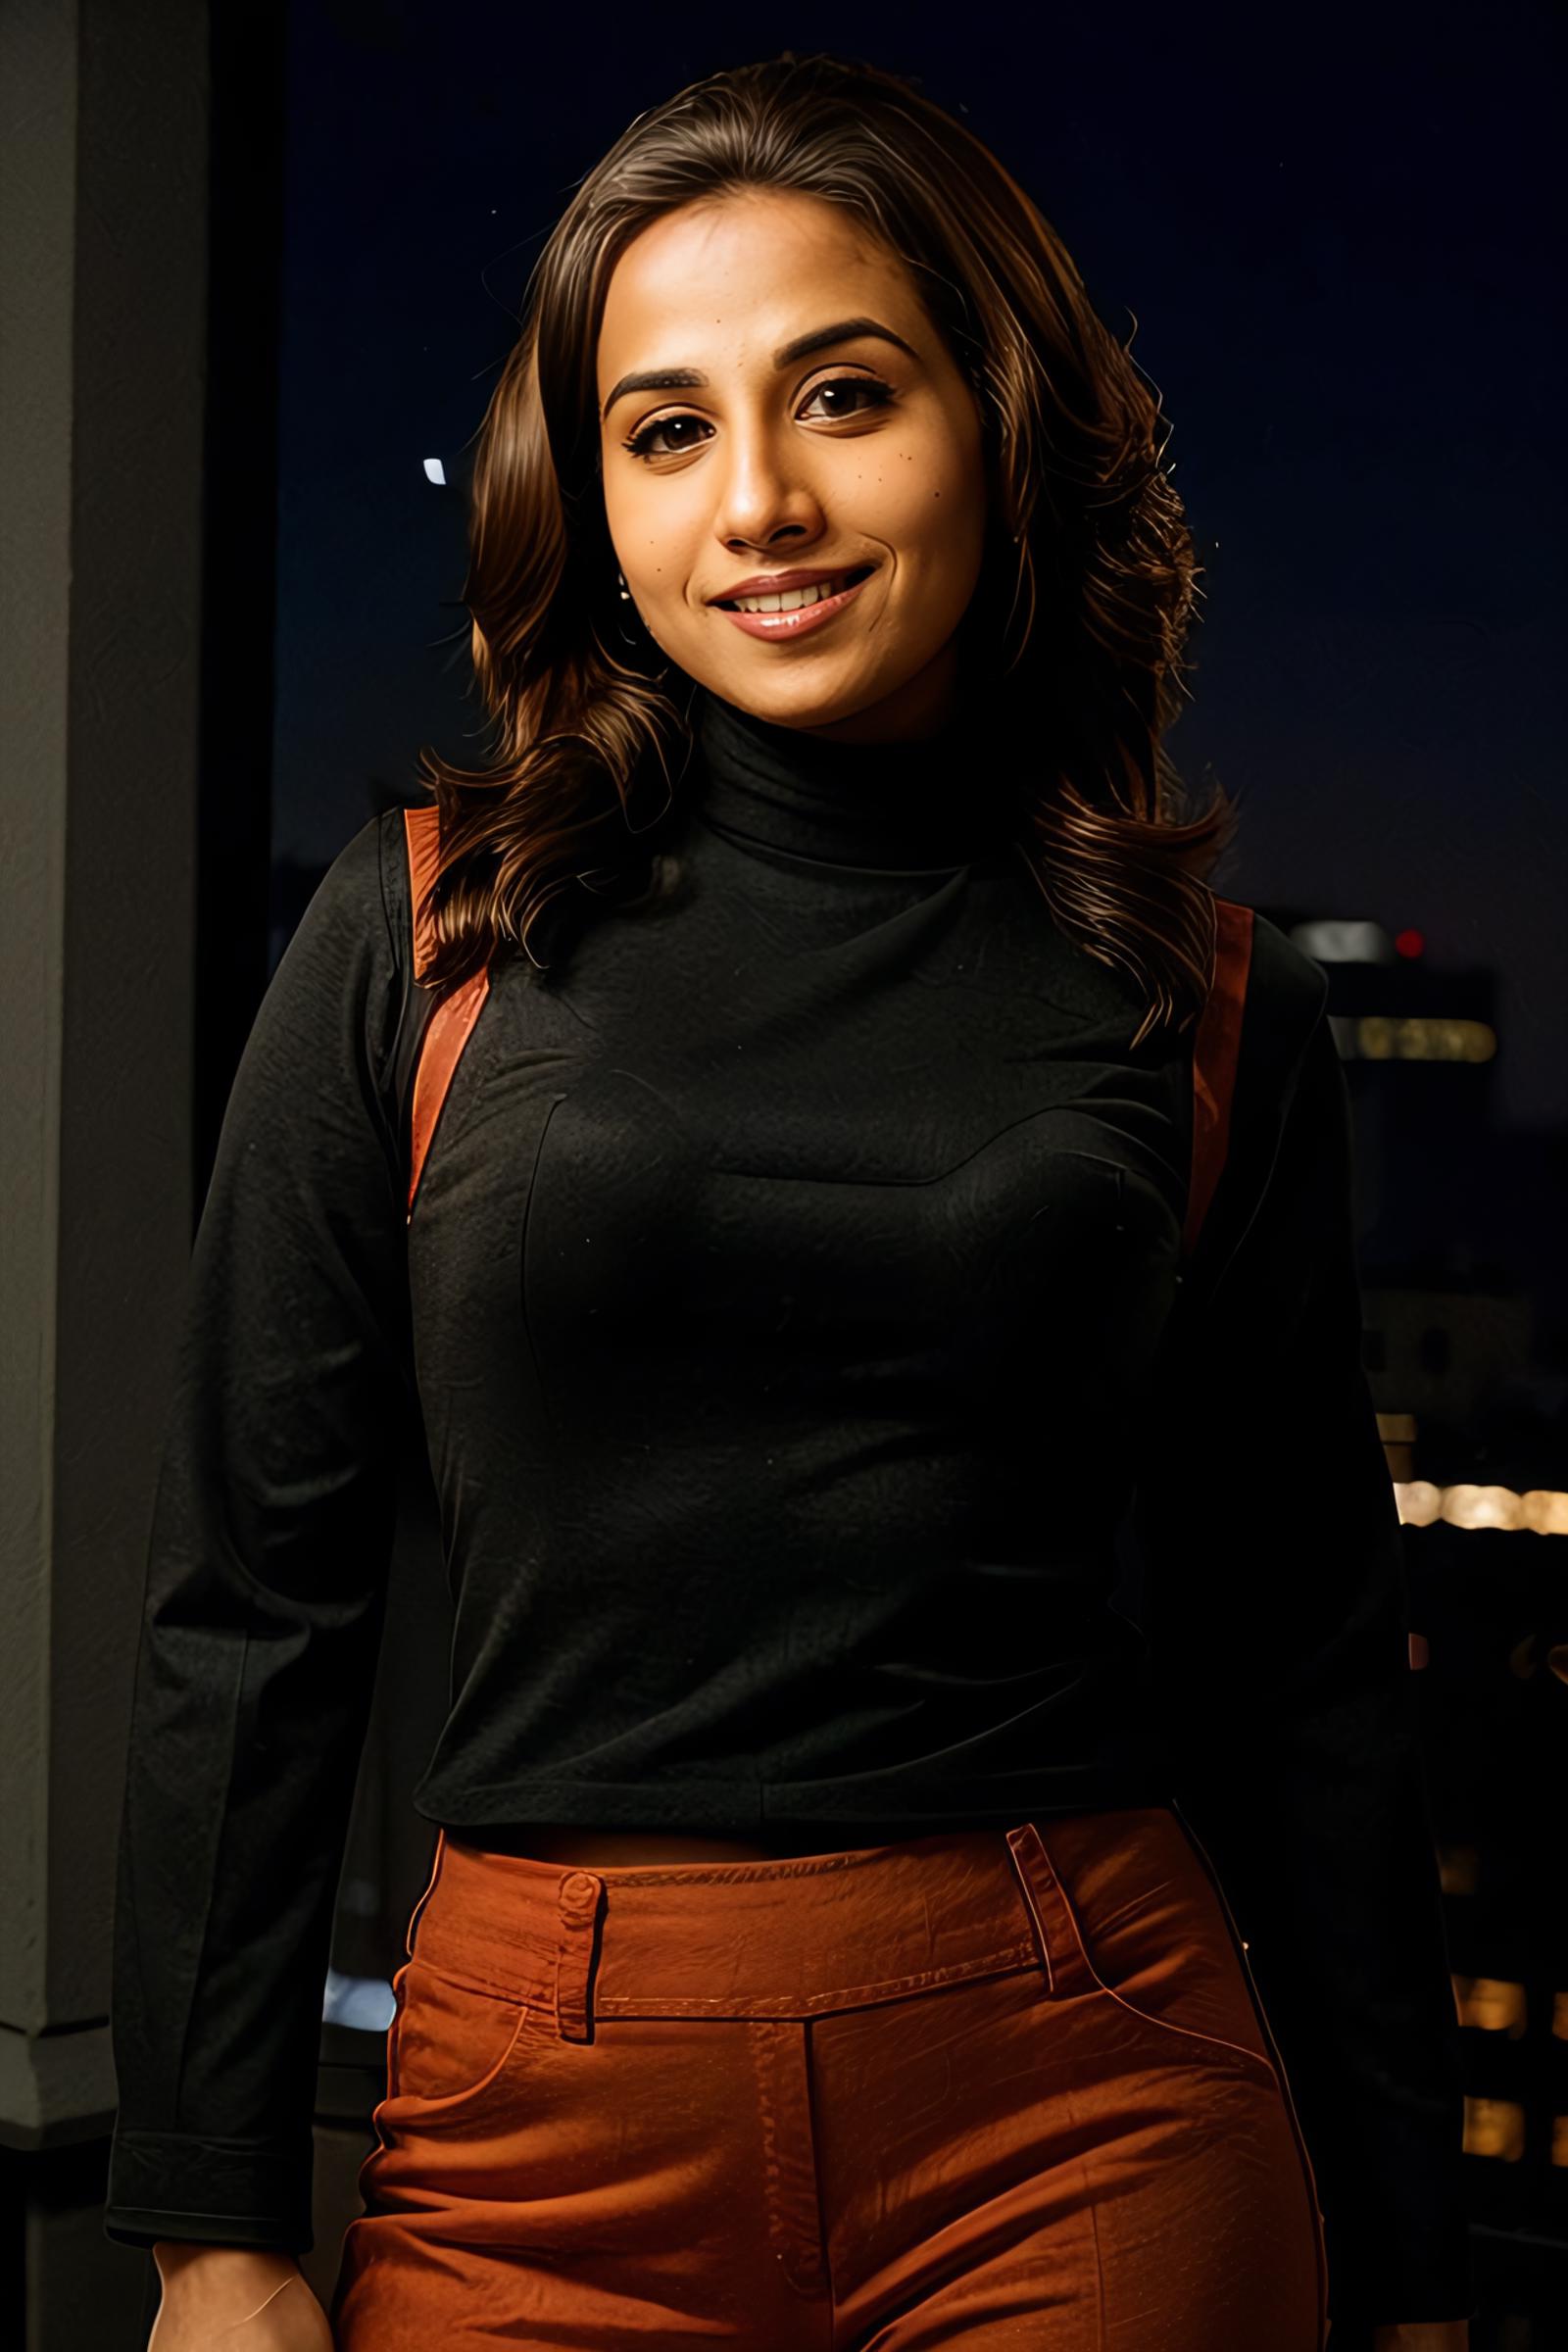 Vidya Balan - Indian Actress (SD1.5) image by Desi_Cafe